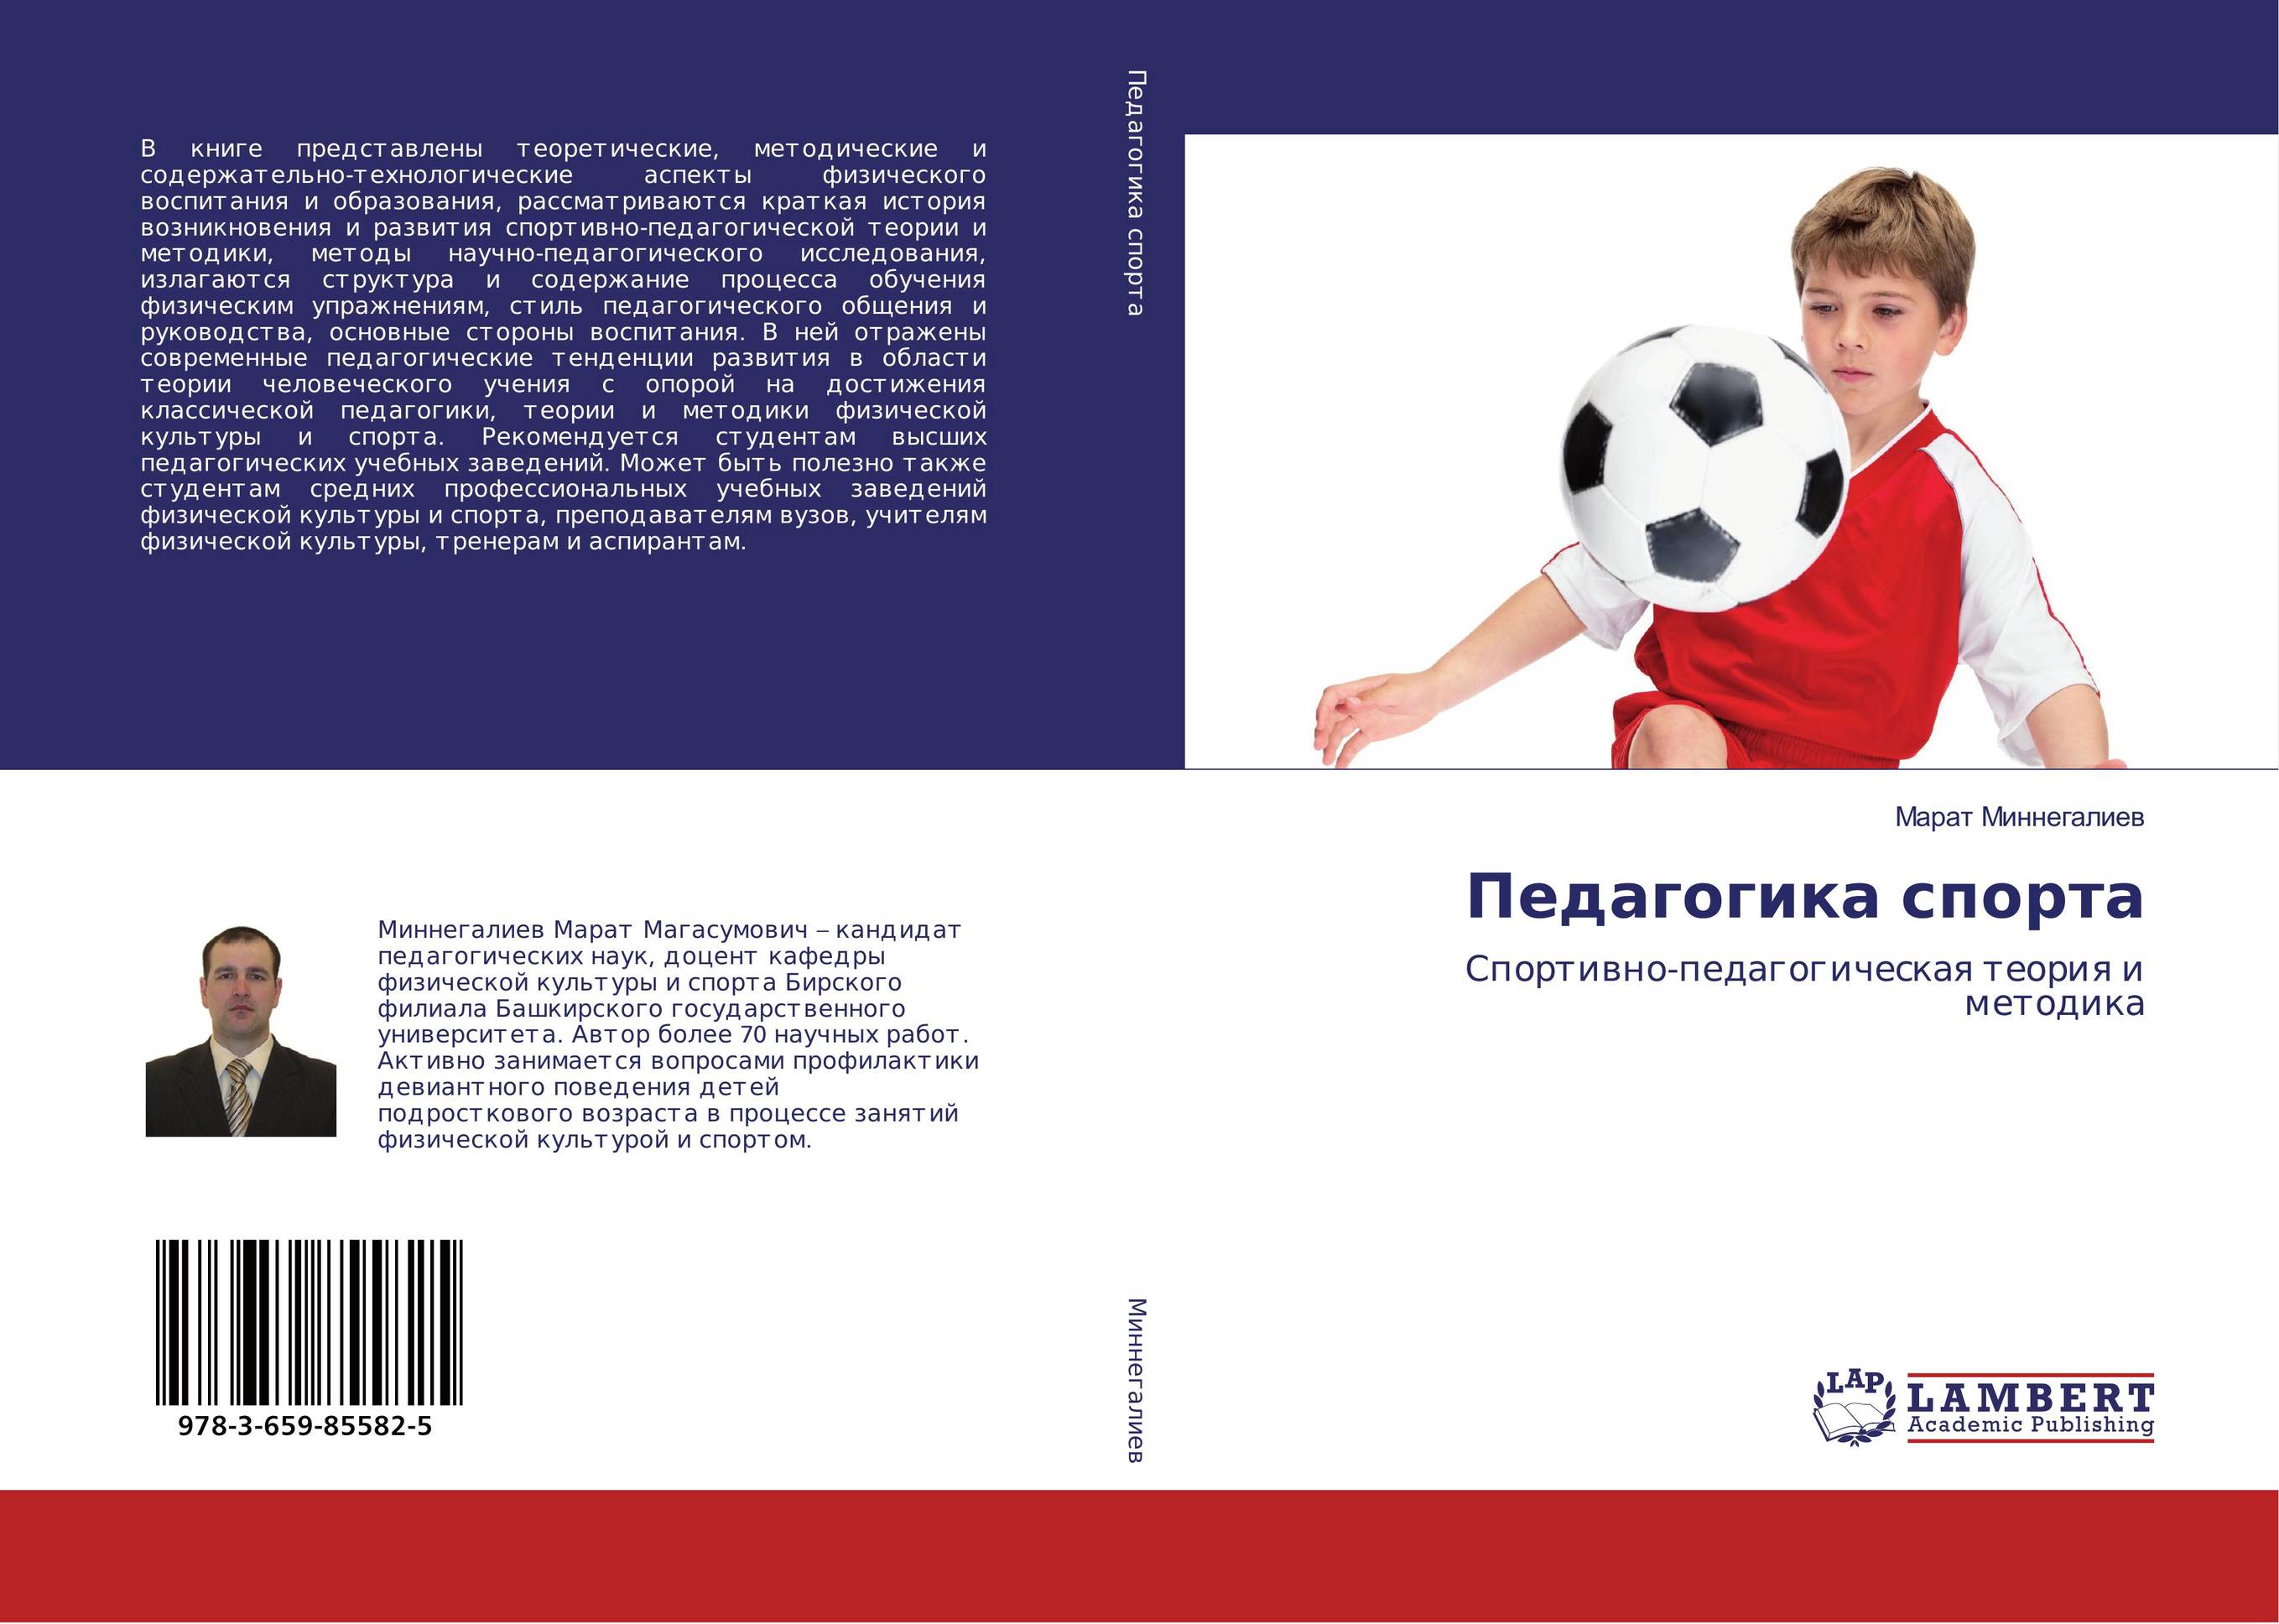 
        Педагогика спорта. Спортивно-педагогическая теория и методика.
      